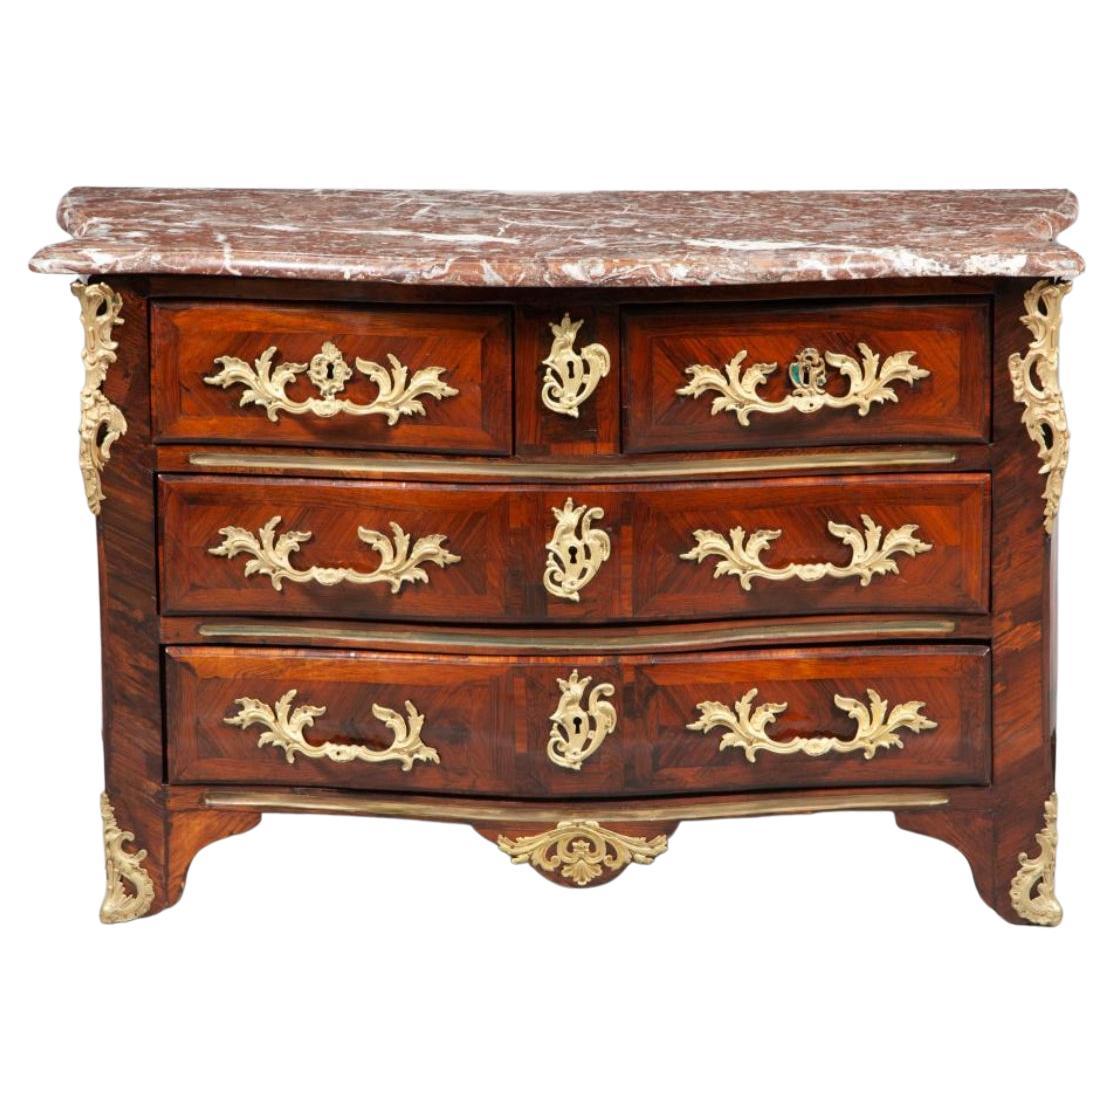 Nous vous présentons un meuble étonnant et rare qui incarne l'élégance et la sophistication du design français du XVIIIe siècle - la Commode française du début du XVIIIe siècle avec incrustation de bois de rose.

Fabriquée en chêne et dotée d'une